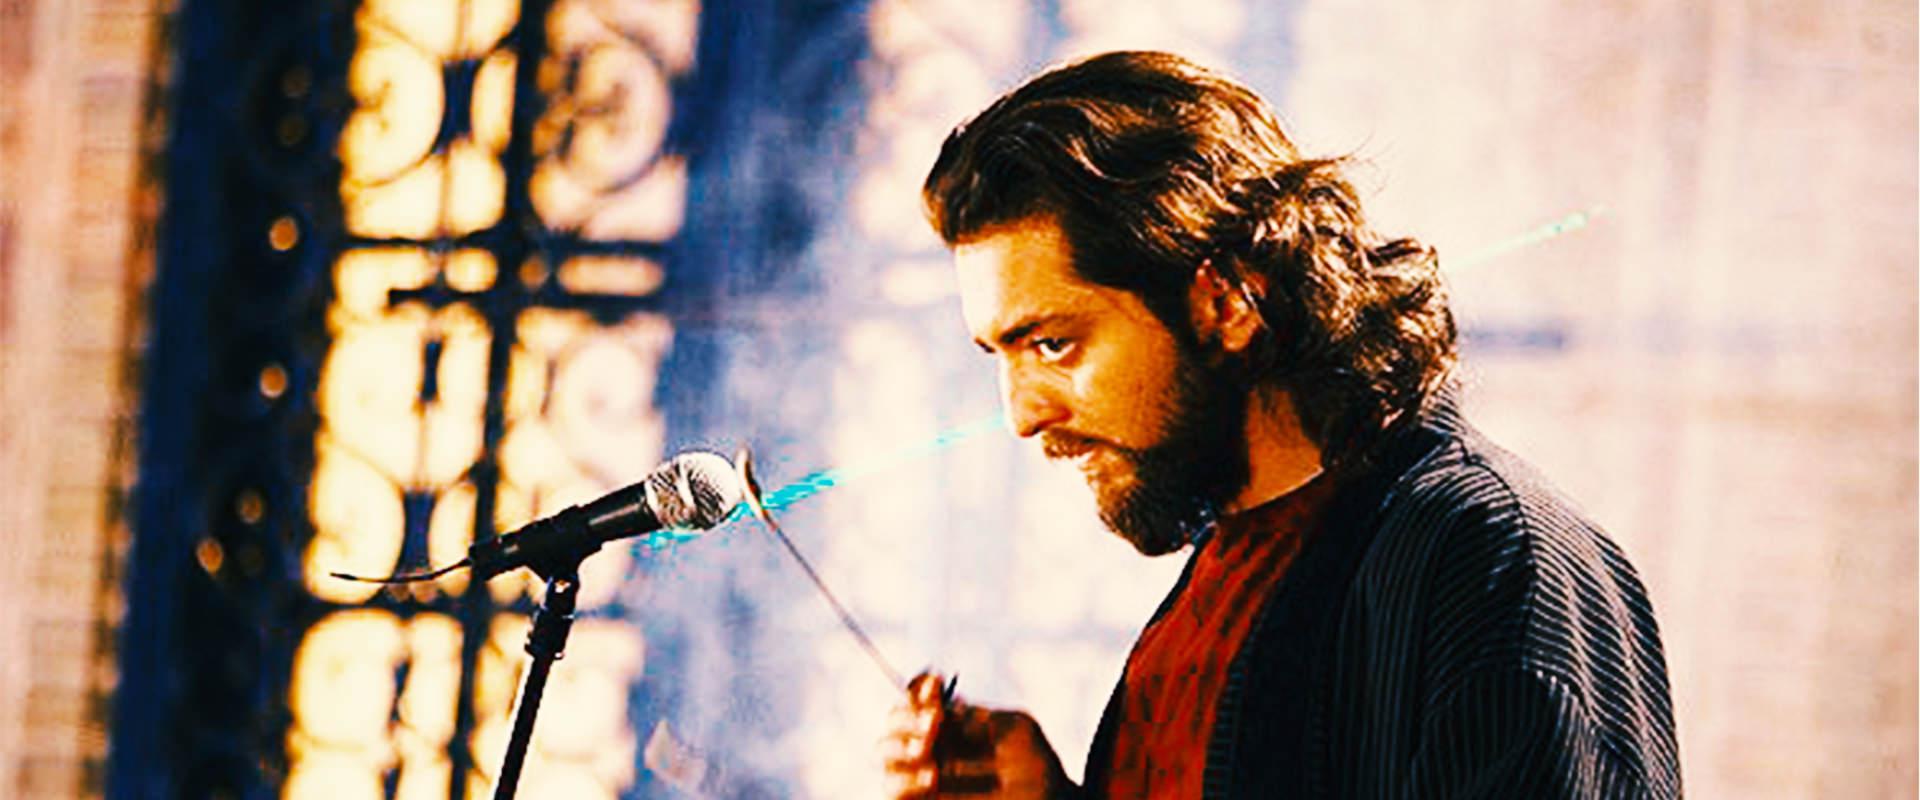 بهرام رادان در حال نواختن سنتور در نمایی از فیلم سنتوری